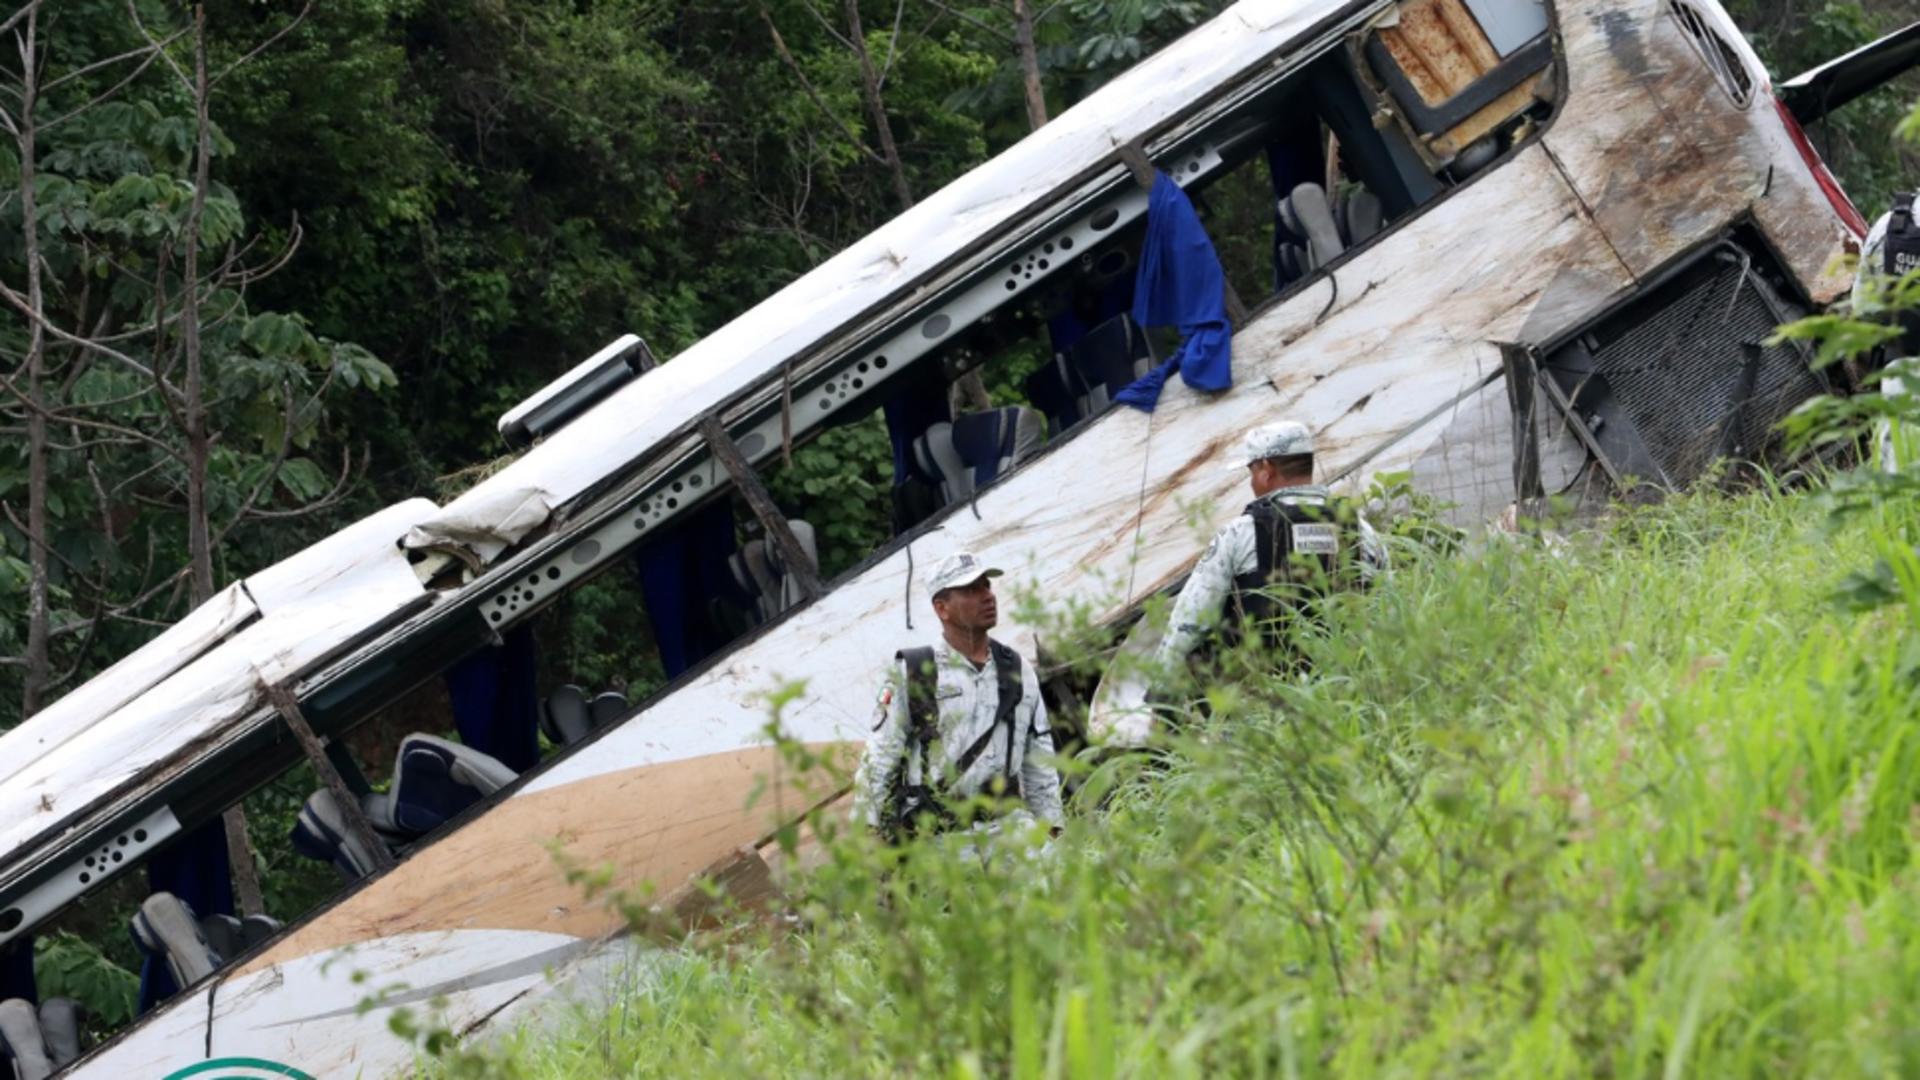 16 morți și 36 de răniți după ce un autobuz a intrat într-un camion, în Mexic. Impact devastator/ Profimedia